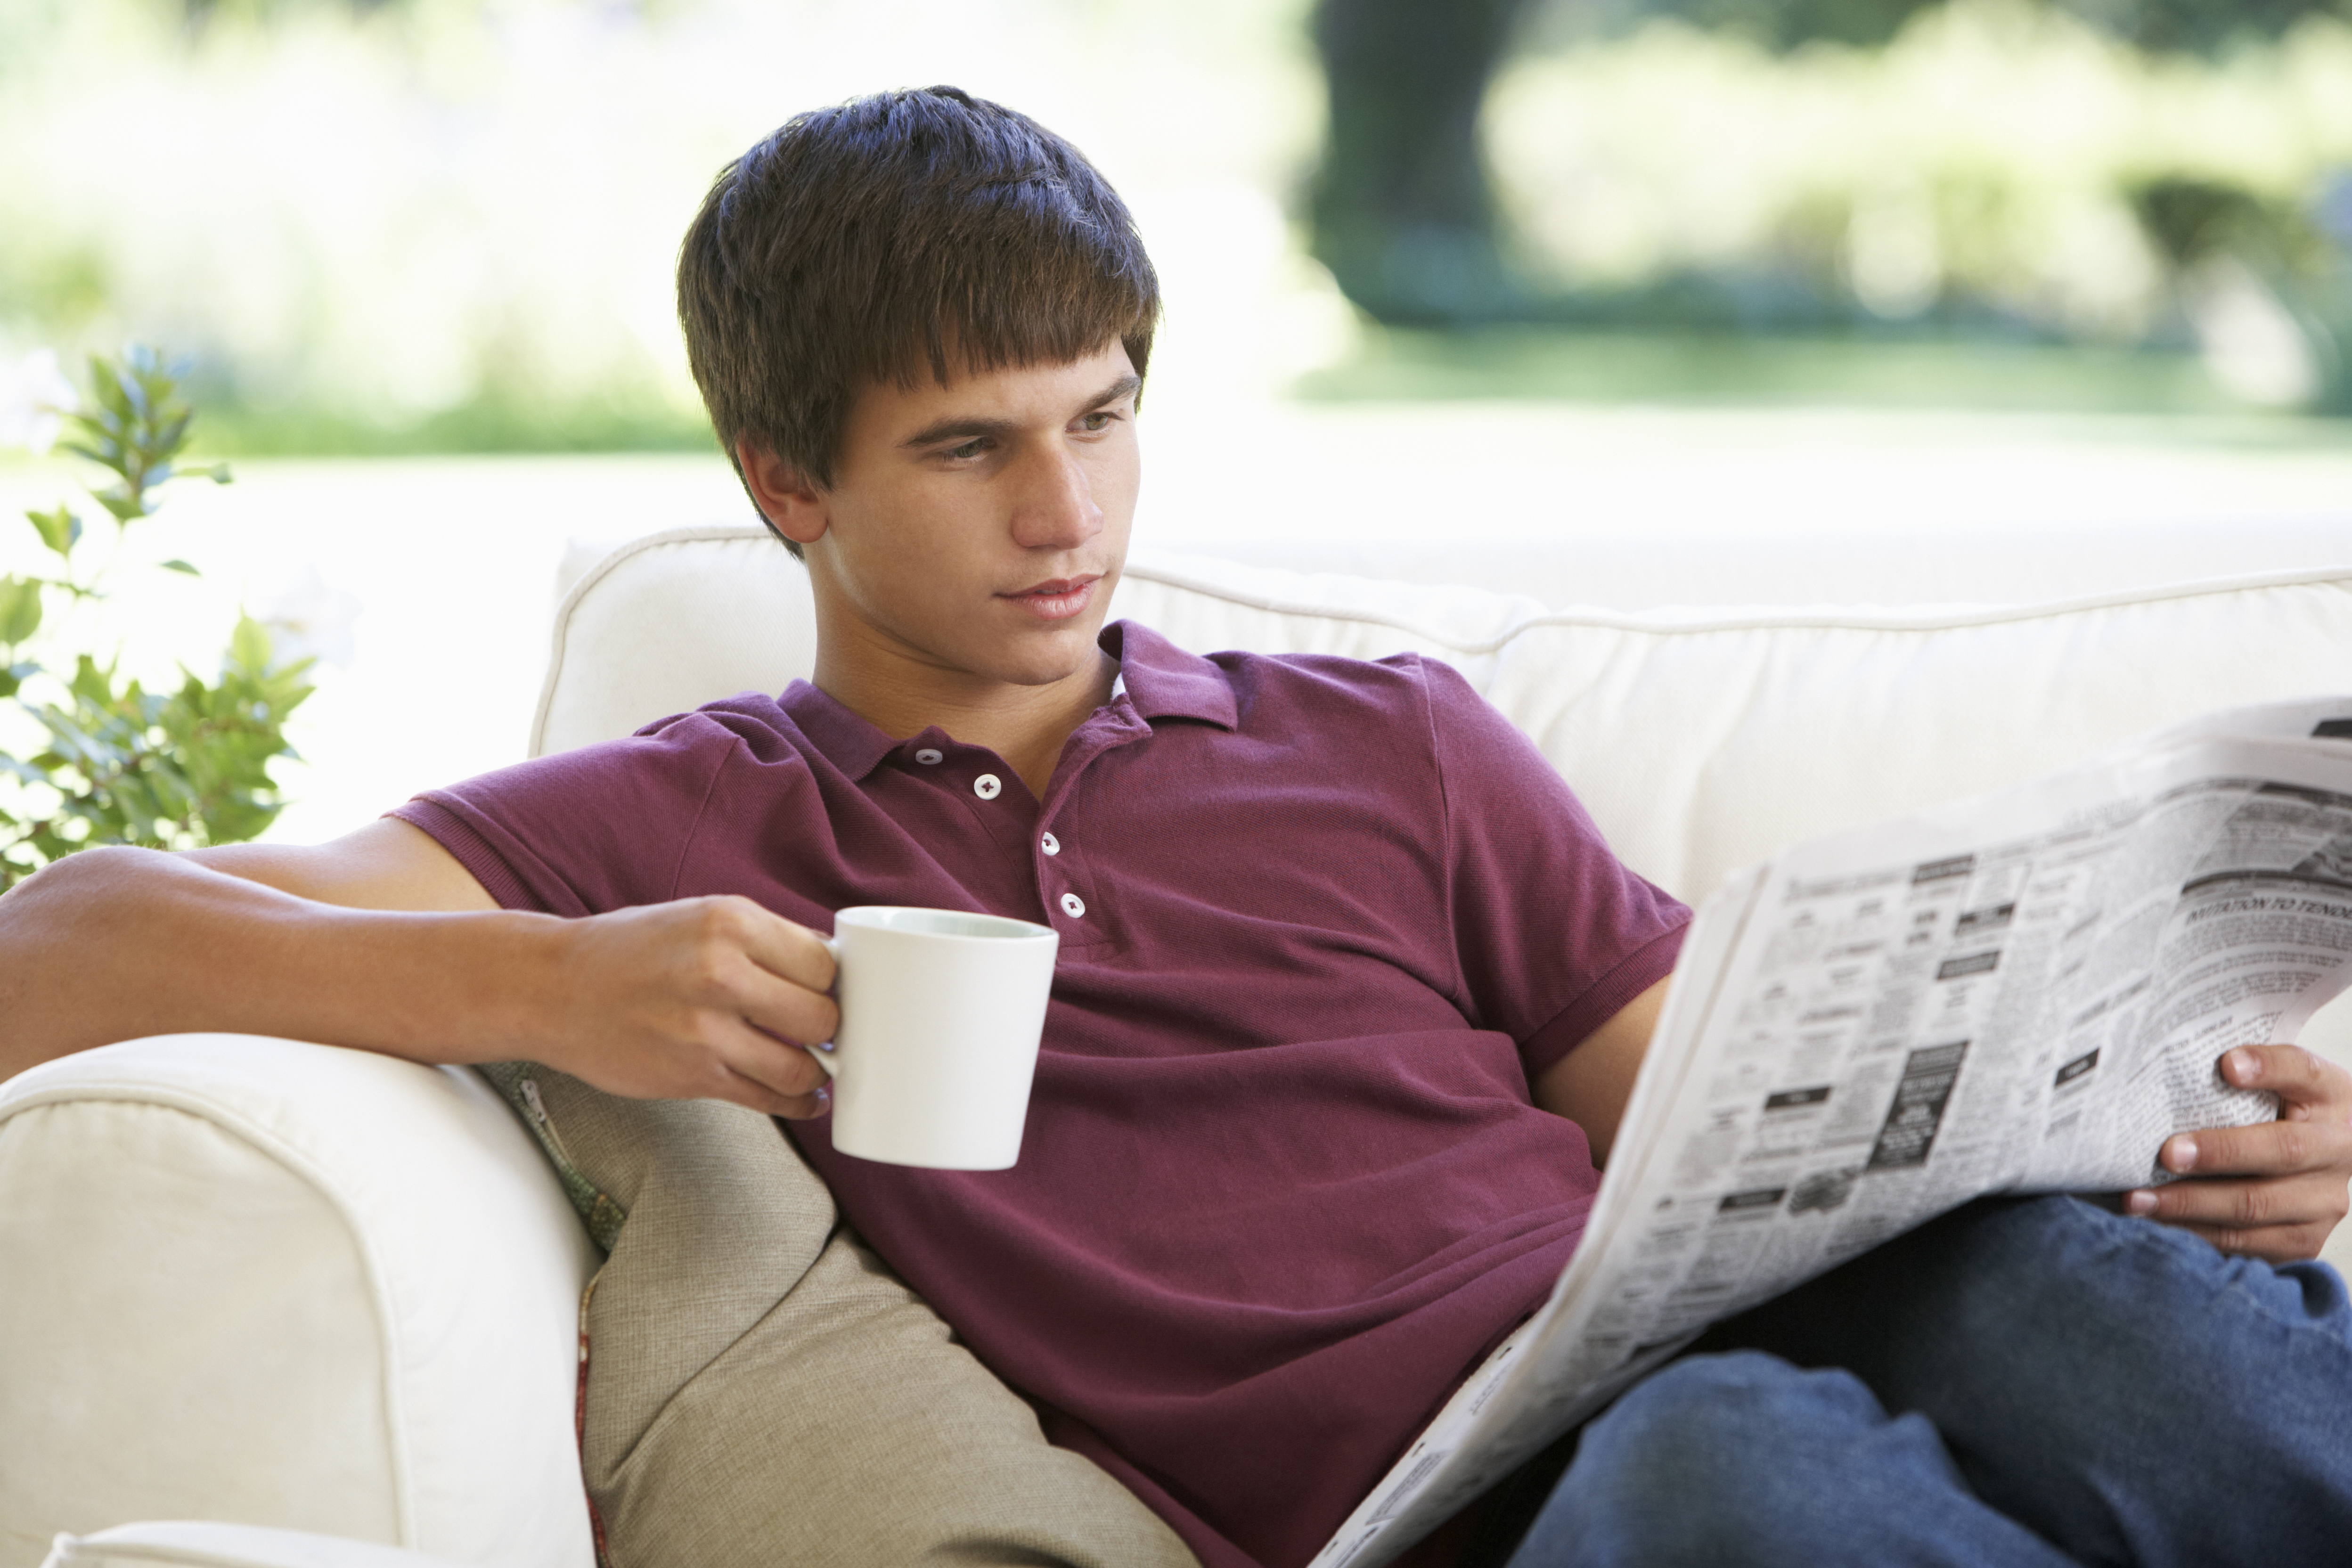 Ein Jugendlicher liest eine Zeitung | Quelle: Shutterstock